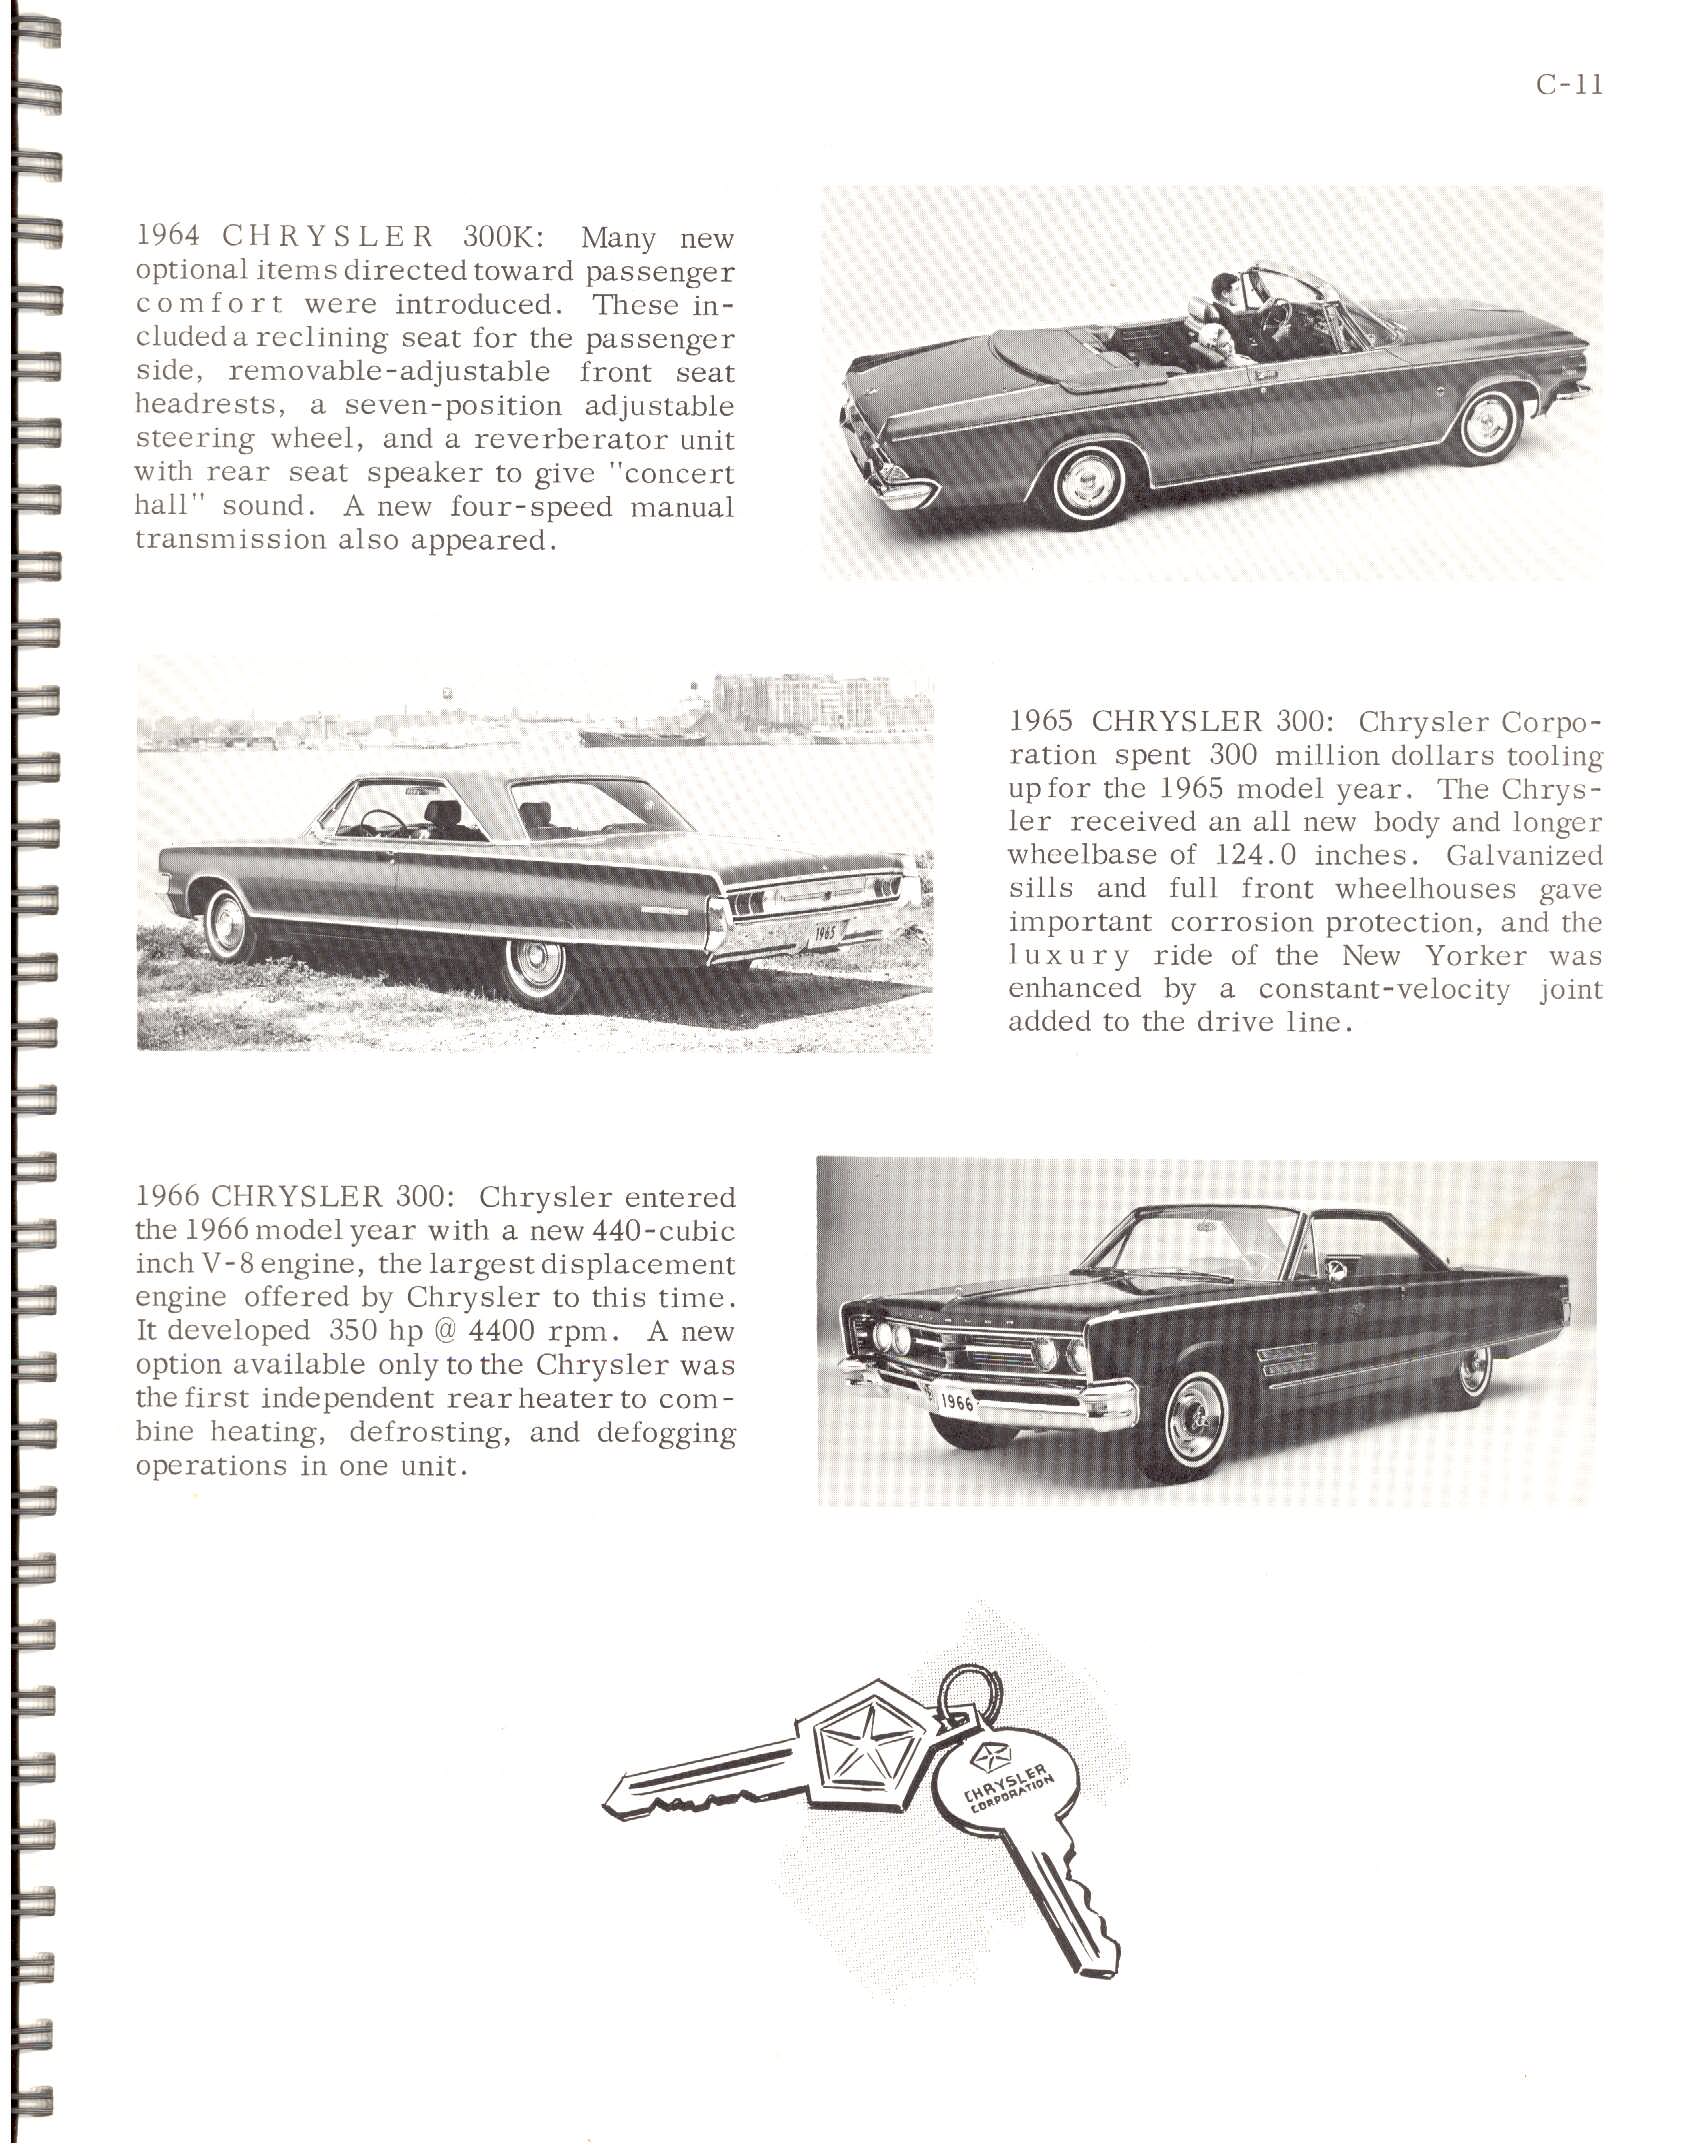 1966-History_Of_Chrysler_Cars-C11